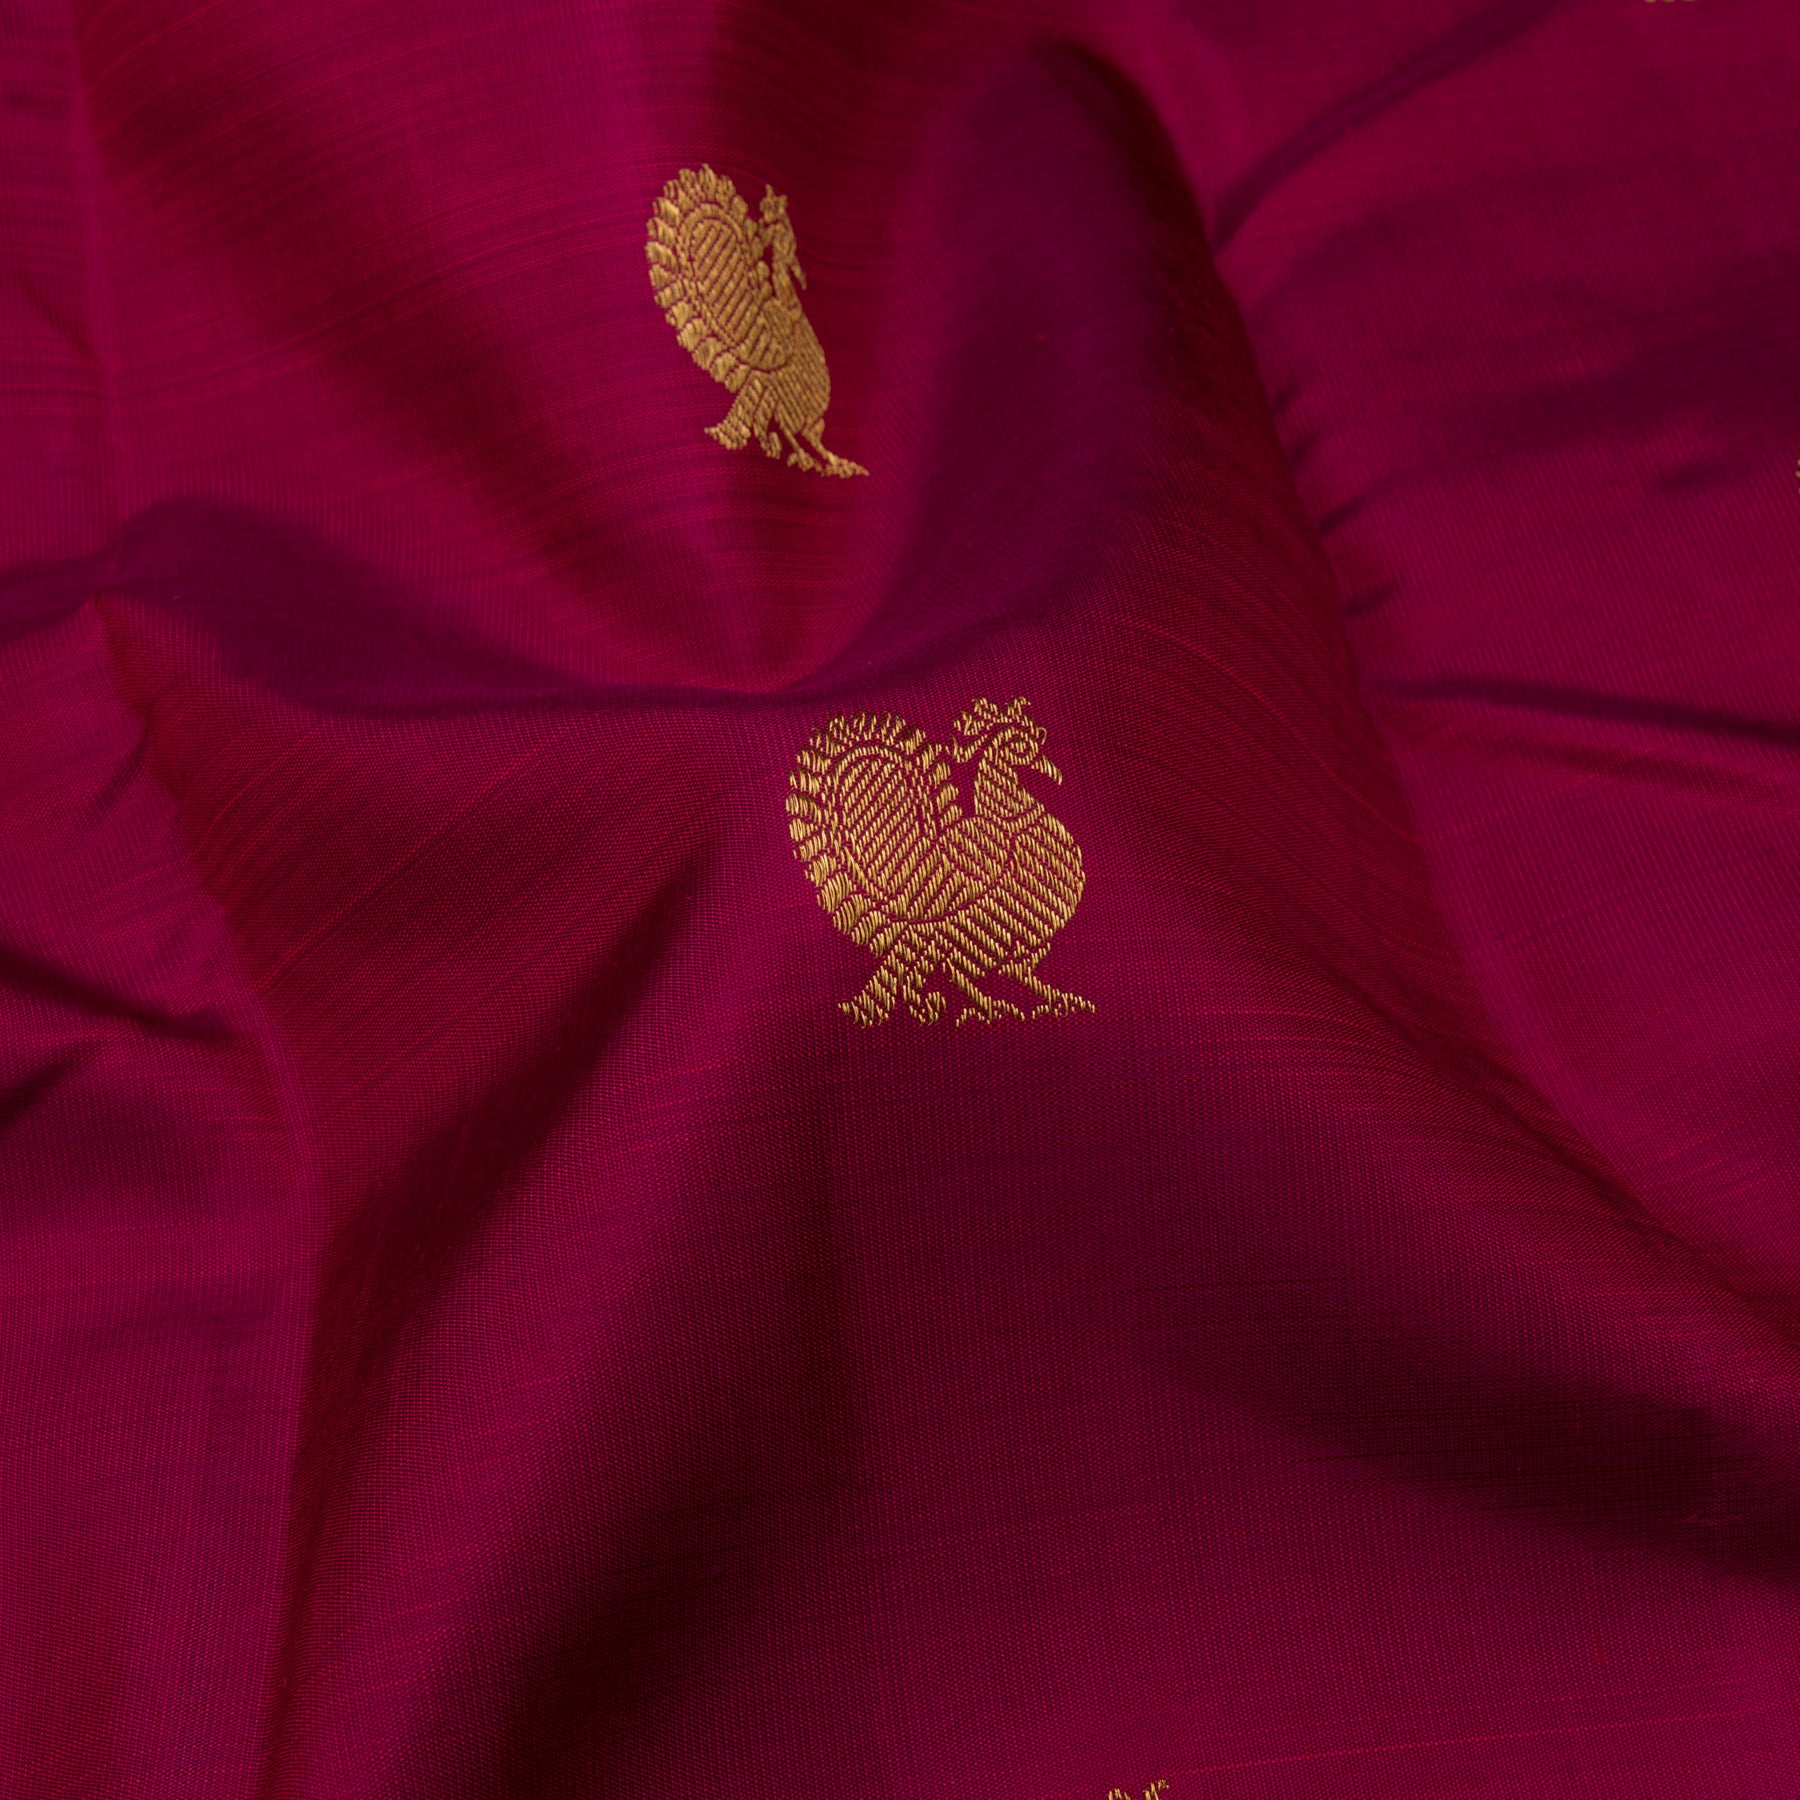 Kanakavalli Kanjivaram Silk Sari 23-595-HS001-10544 - Fabric View